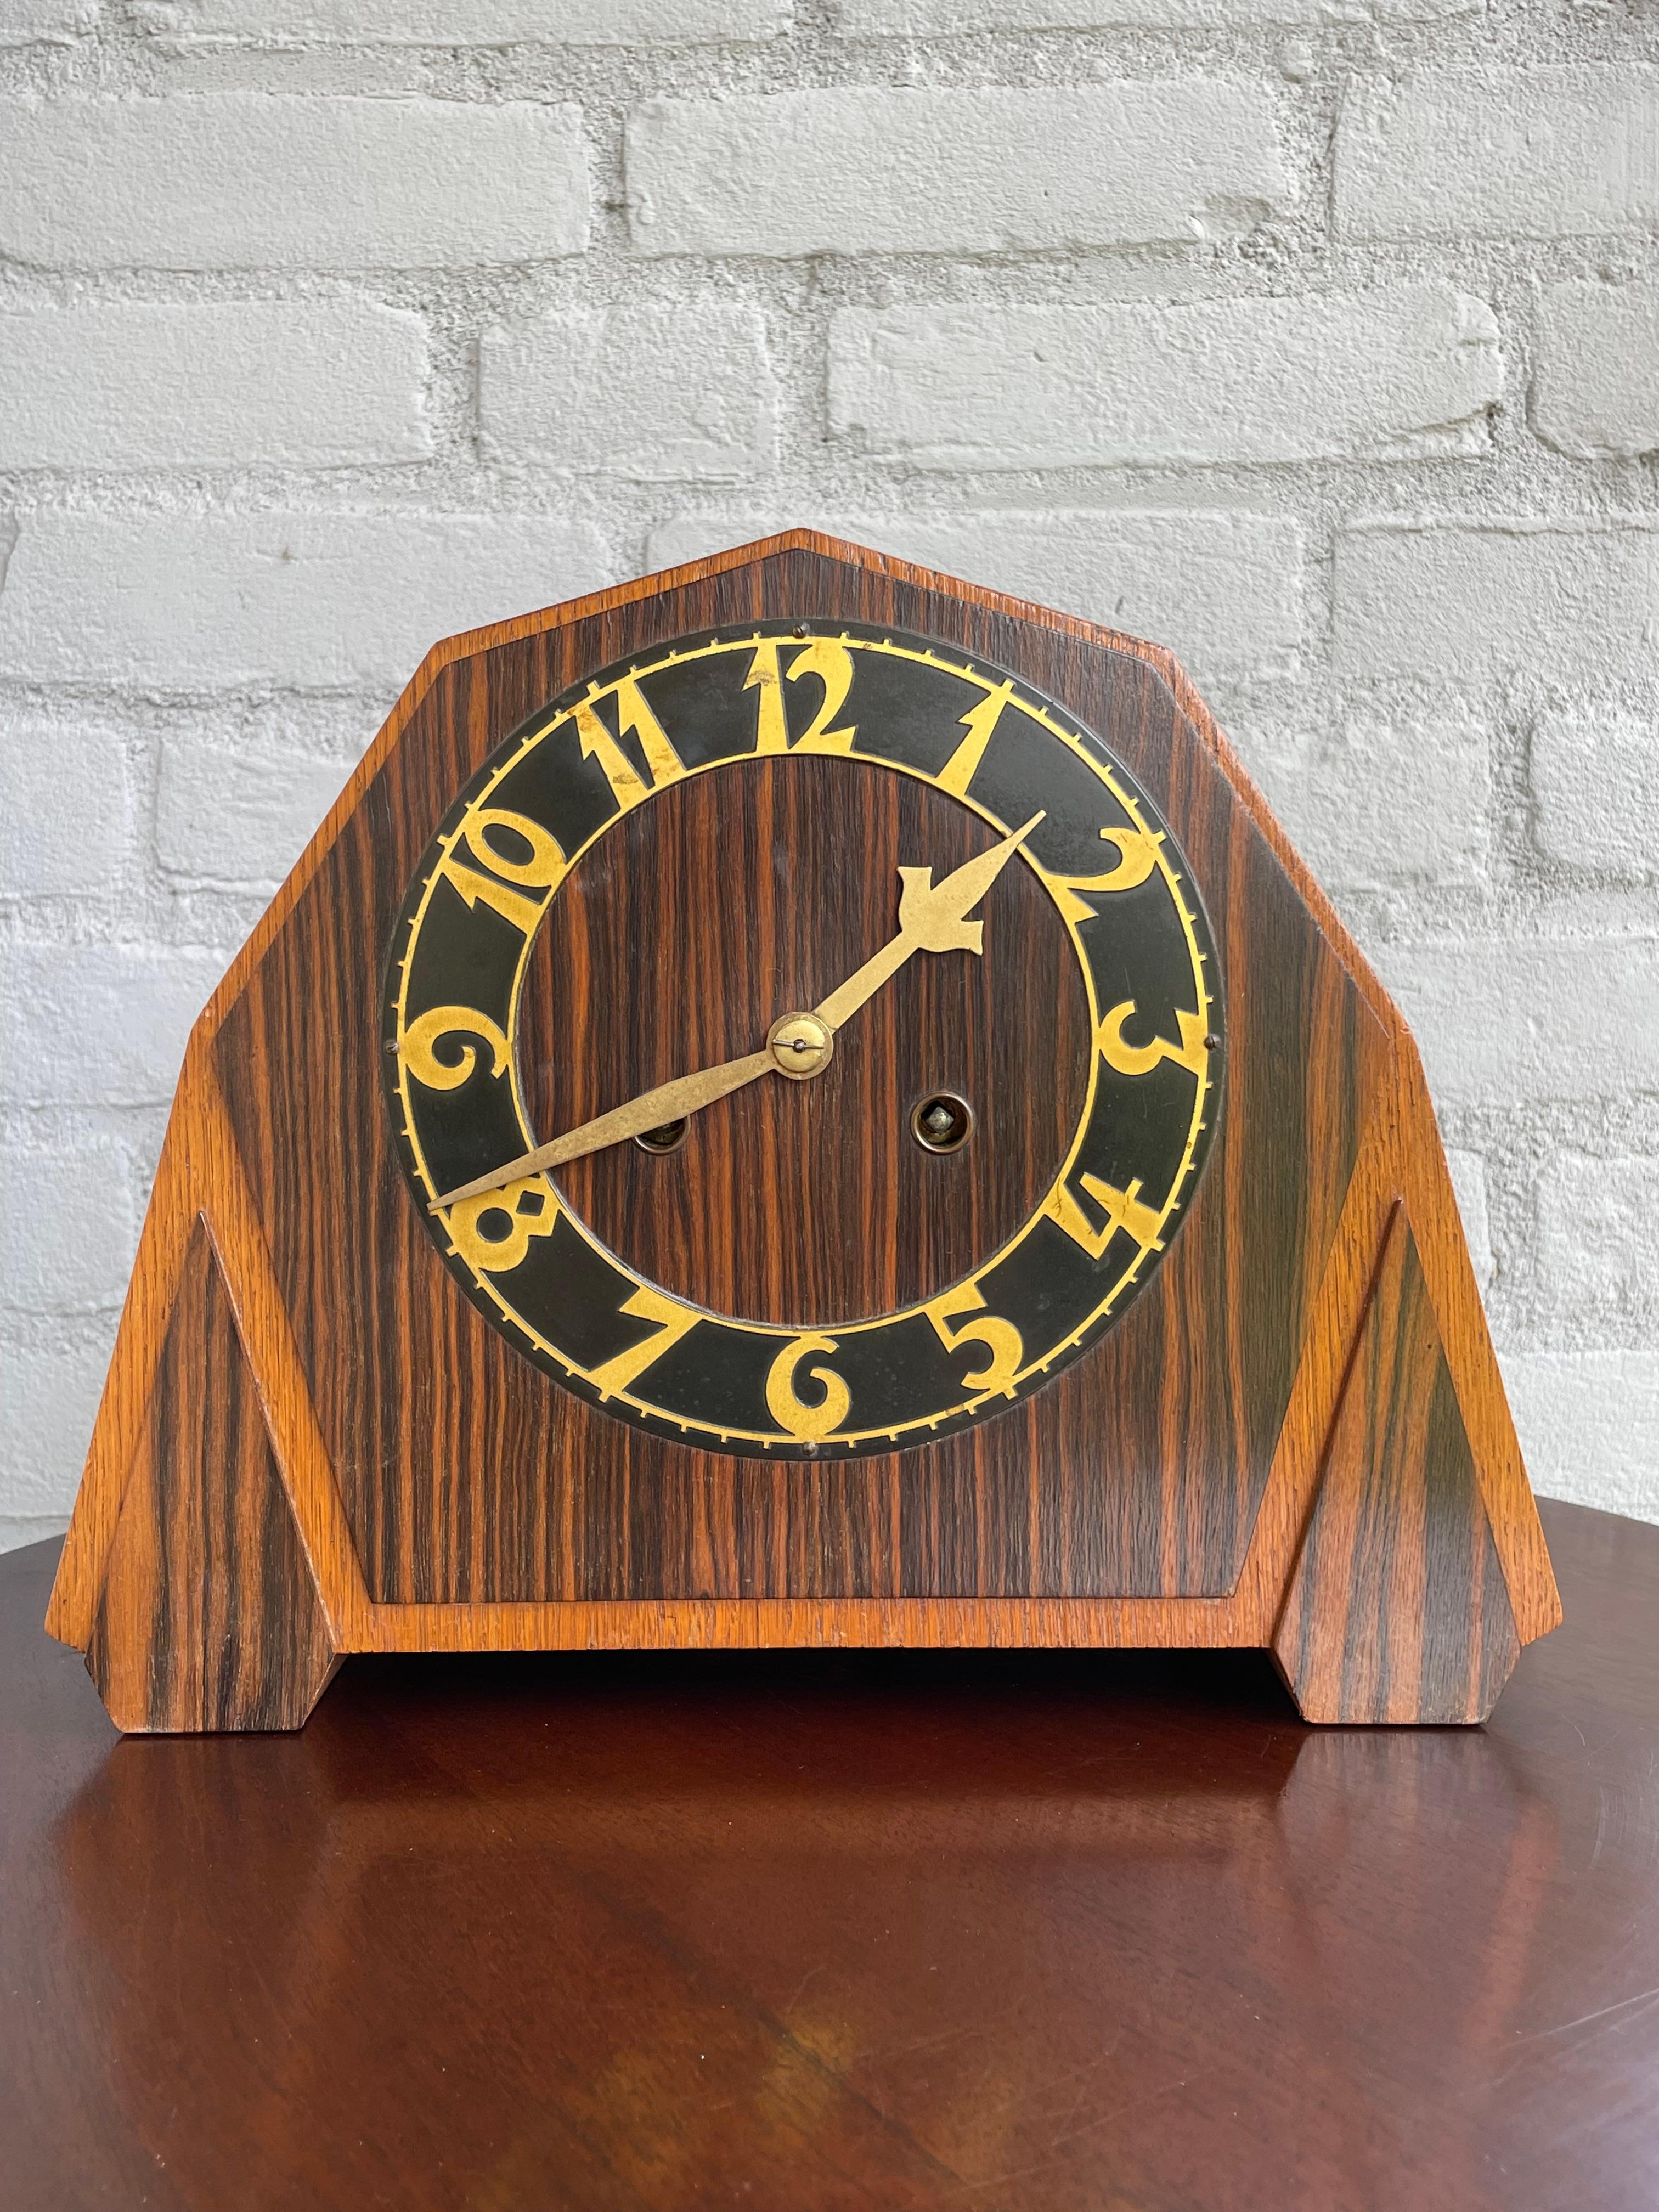 Schönes Design und perfekt funktionierende, niederländische Art Deco Uhr.

Wenn Sie auf der Suche nach einer Uhr mit großartigem Design und in hervorragendem Zustand sind, dann könnte dieses originale Art-Déco-Exemplar aus den 1920er Jahren perfekt